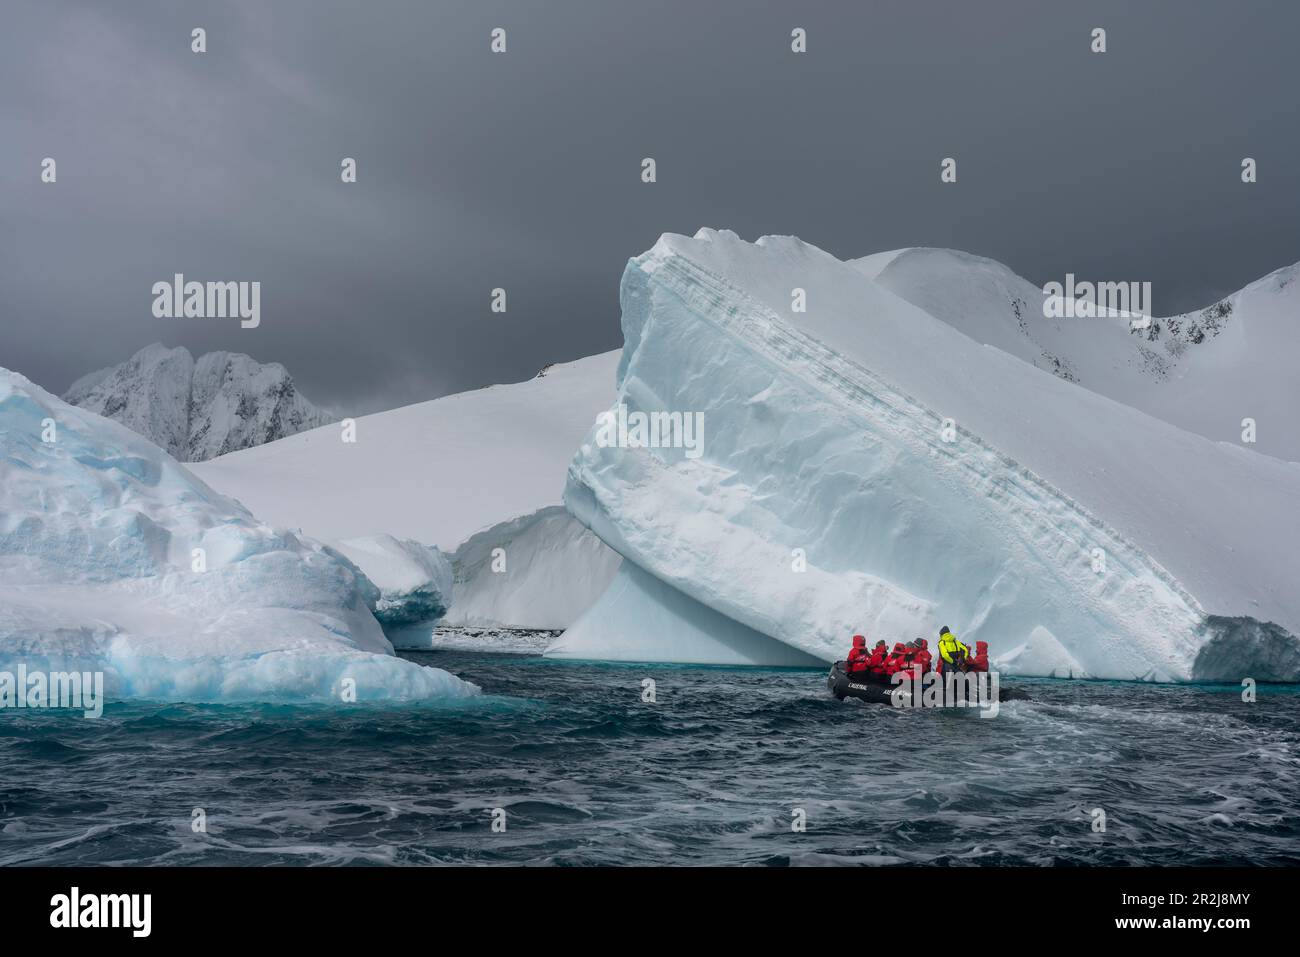 Touristes dans un bateau gonflable explorant l'île de Pleneau, l'Antarctique, les régions polaires Banque D'Images